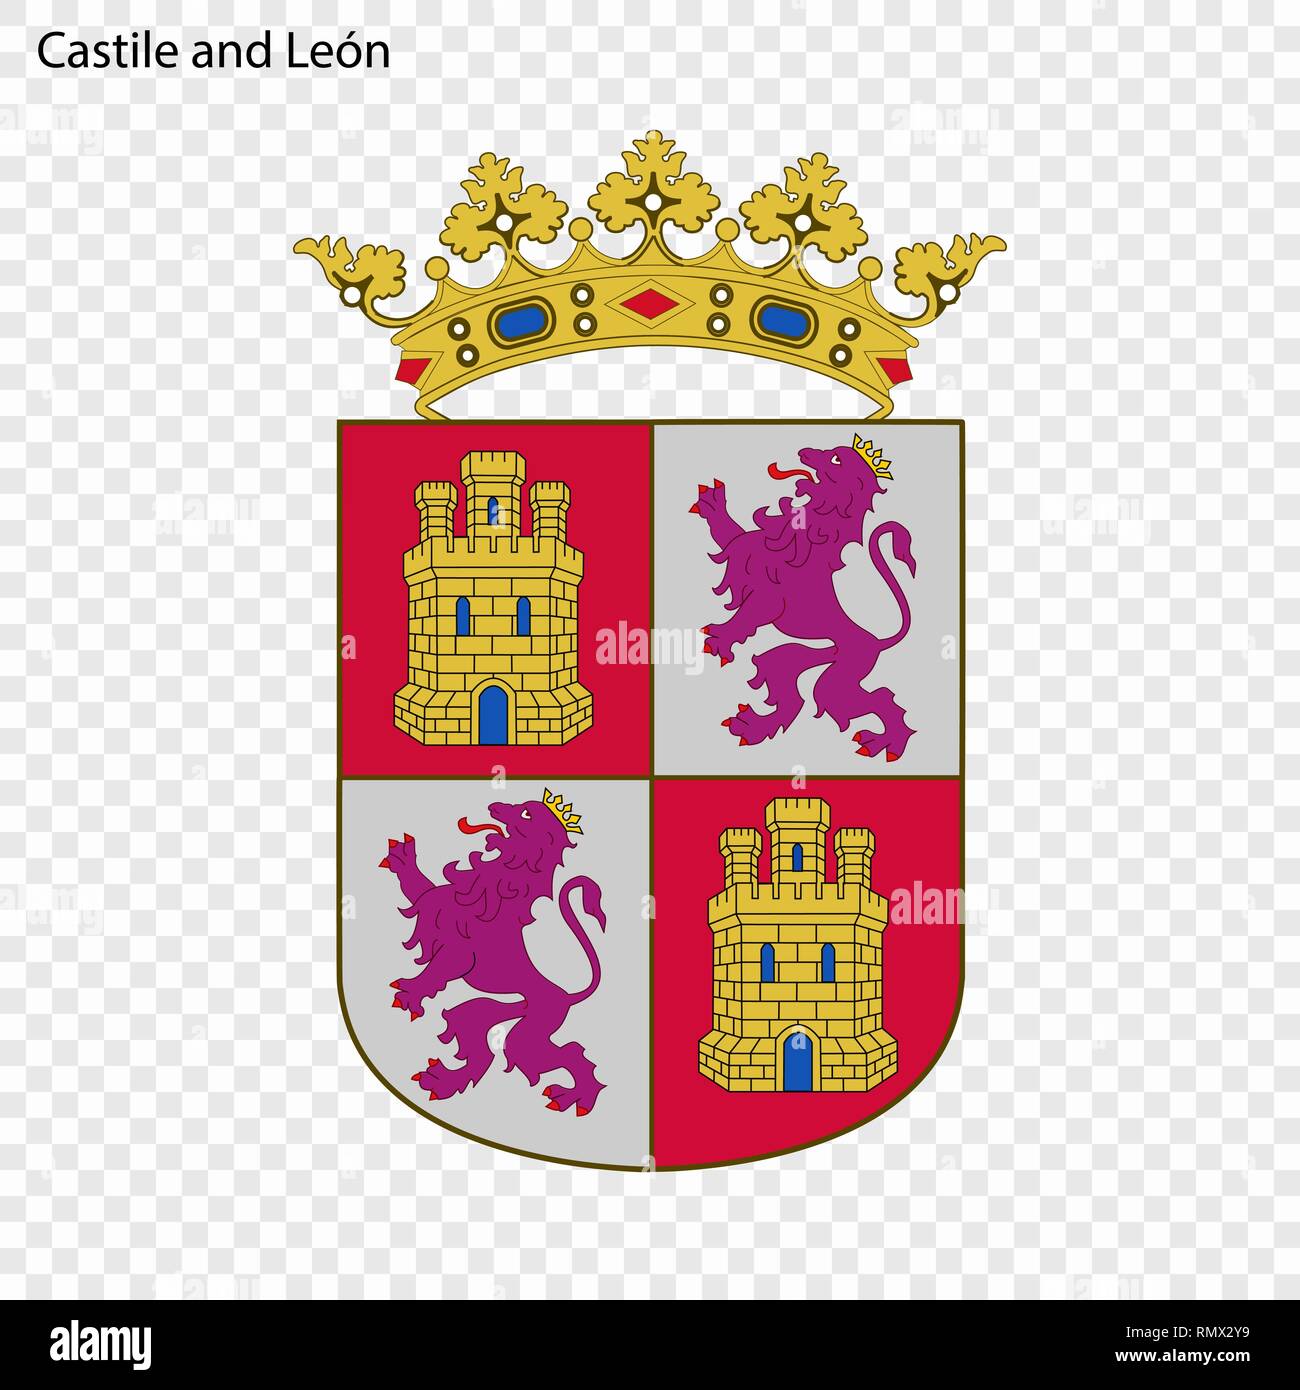 Escudo escudo de la corona de castilla Imágenes vectoriales de stock ...